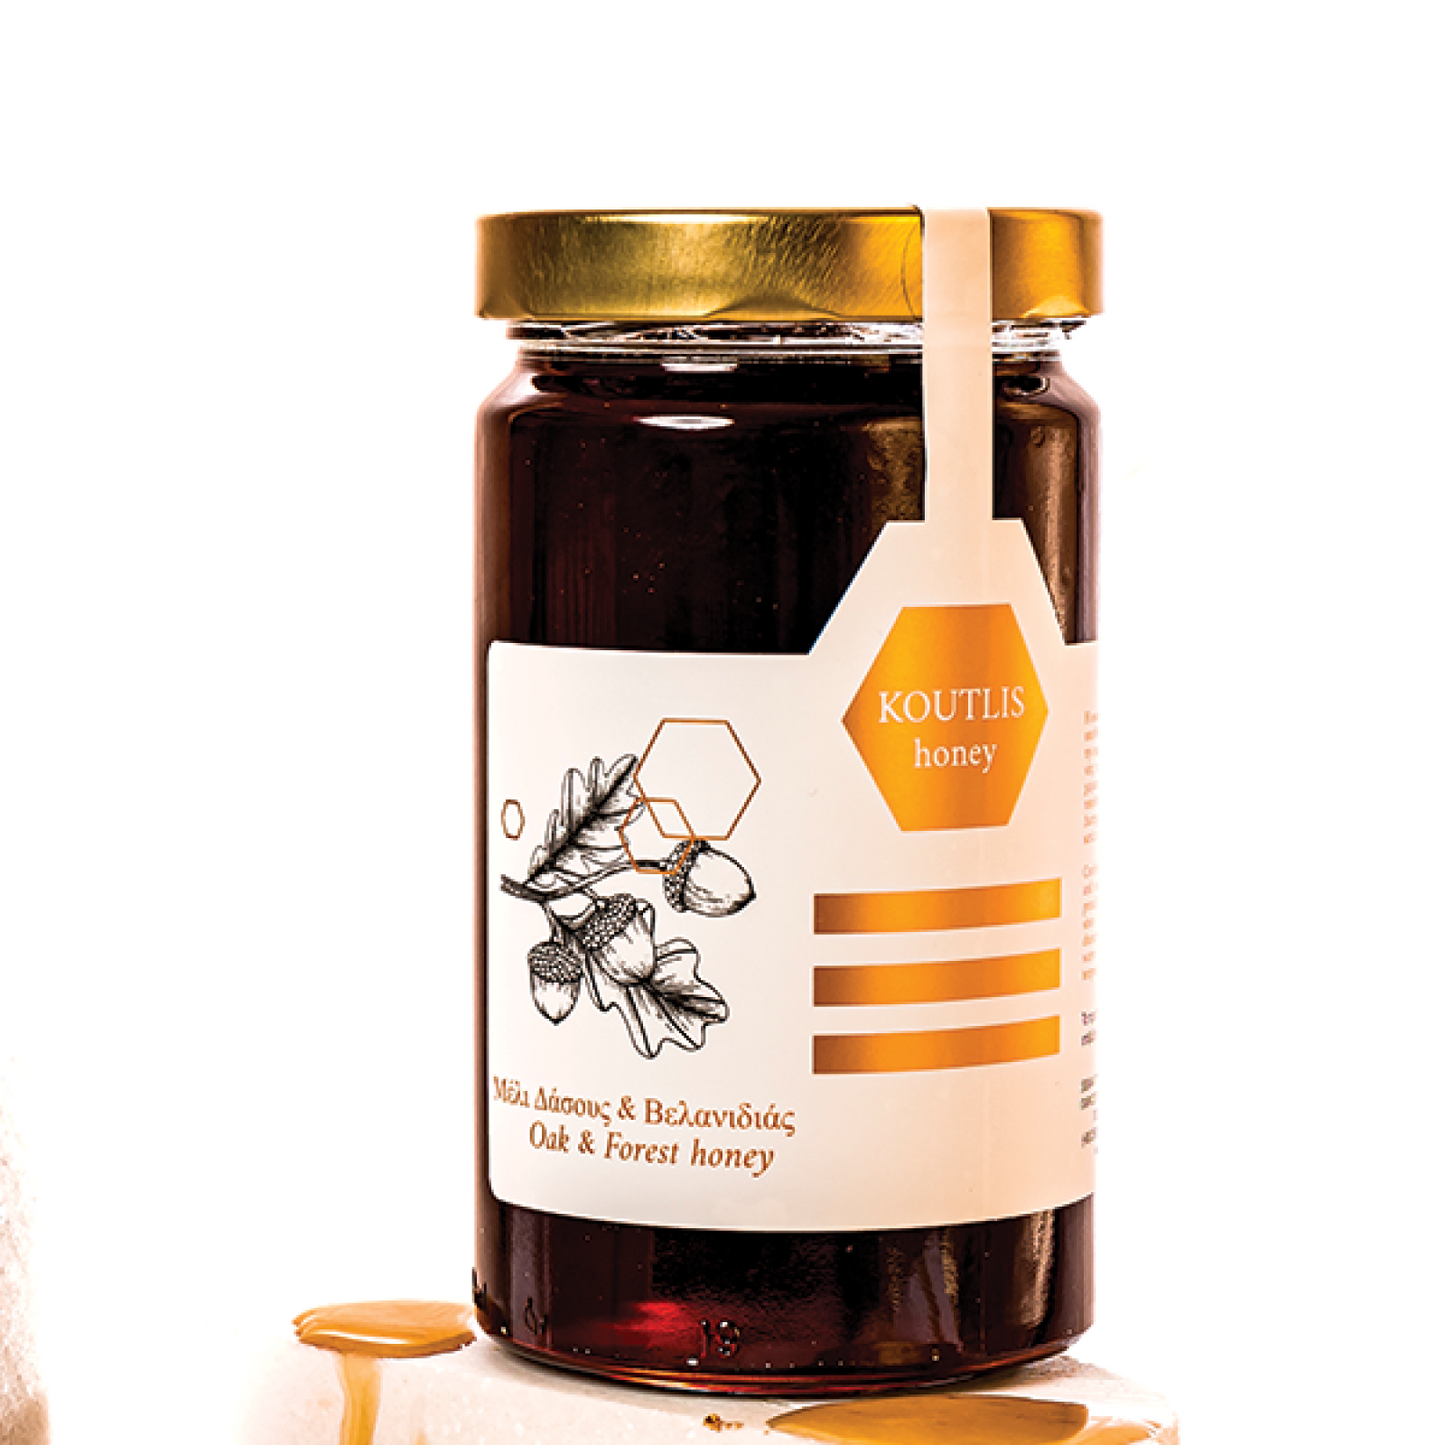 Skogs-och ekhonung 450g från Tassos "Koutlis Honey"